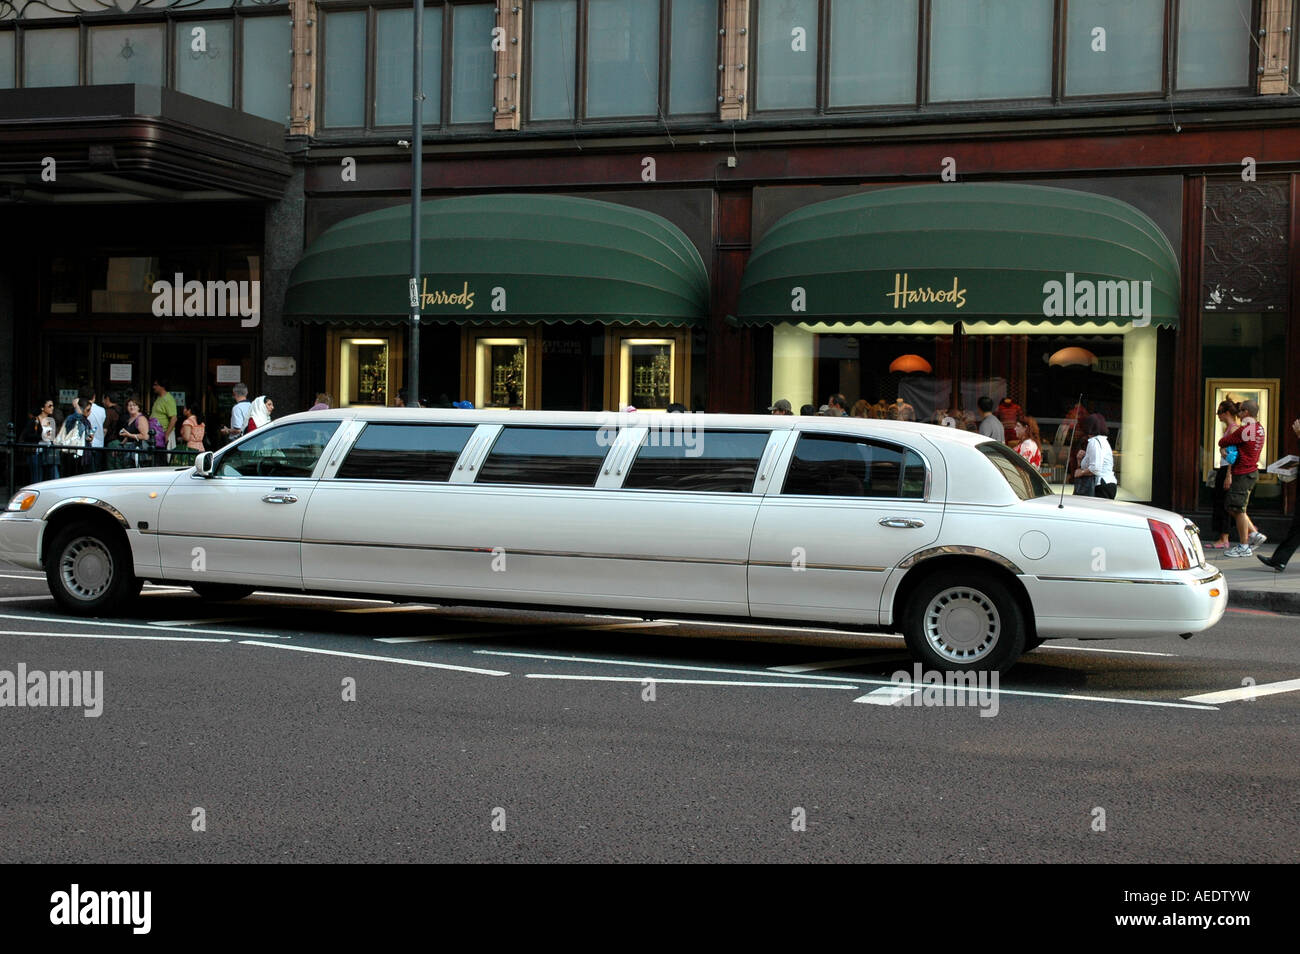 Un service de location de limousine à l'extérieur de Harrods Knightsbridge Londres Angleterre Banque D'Images